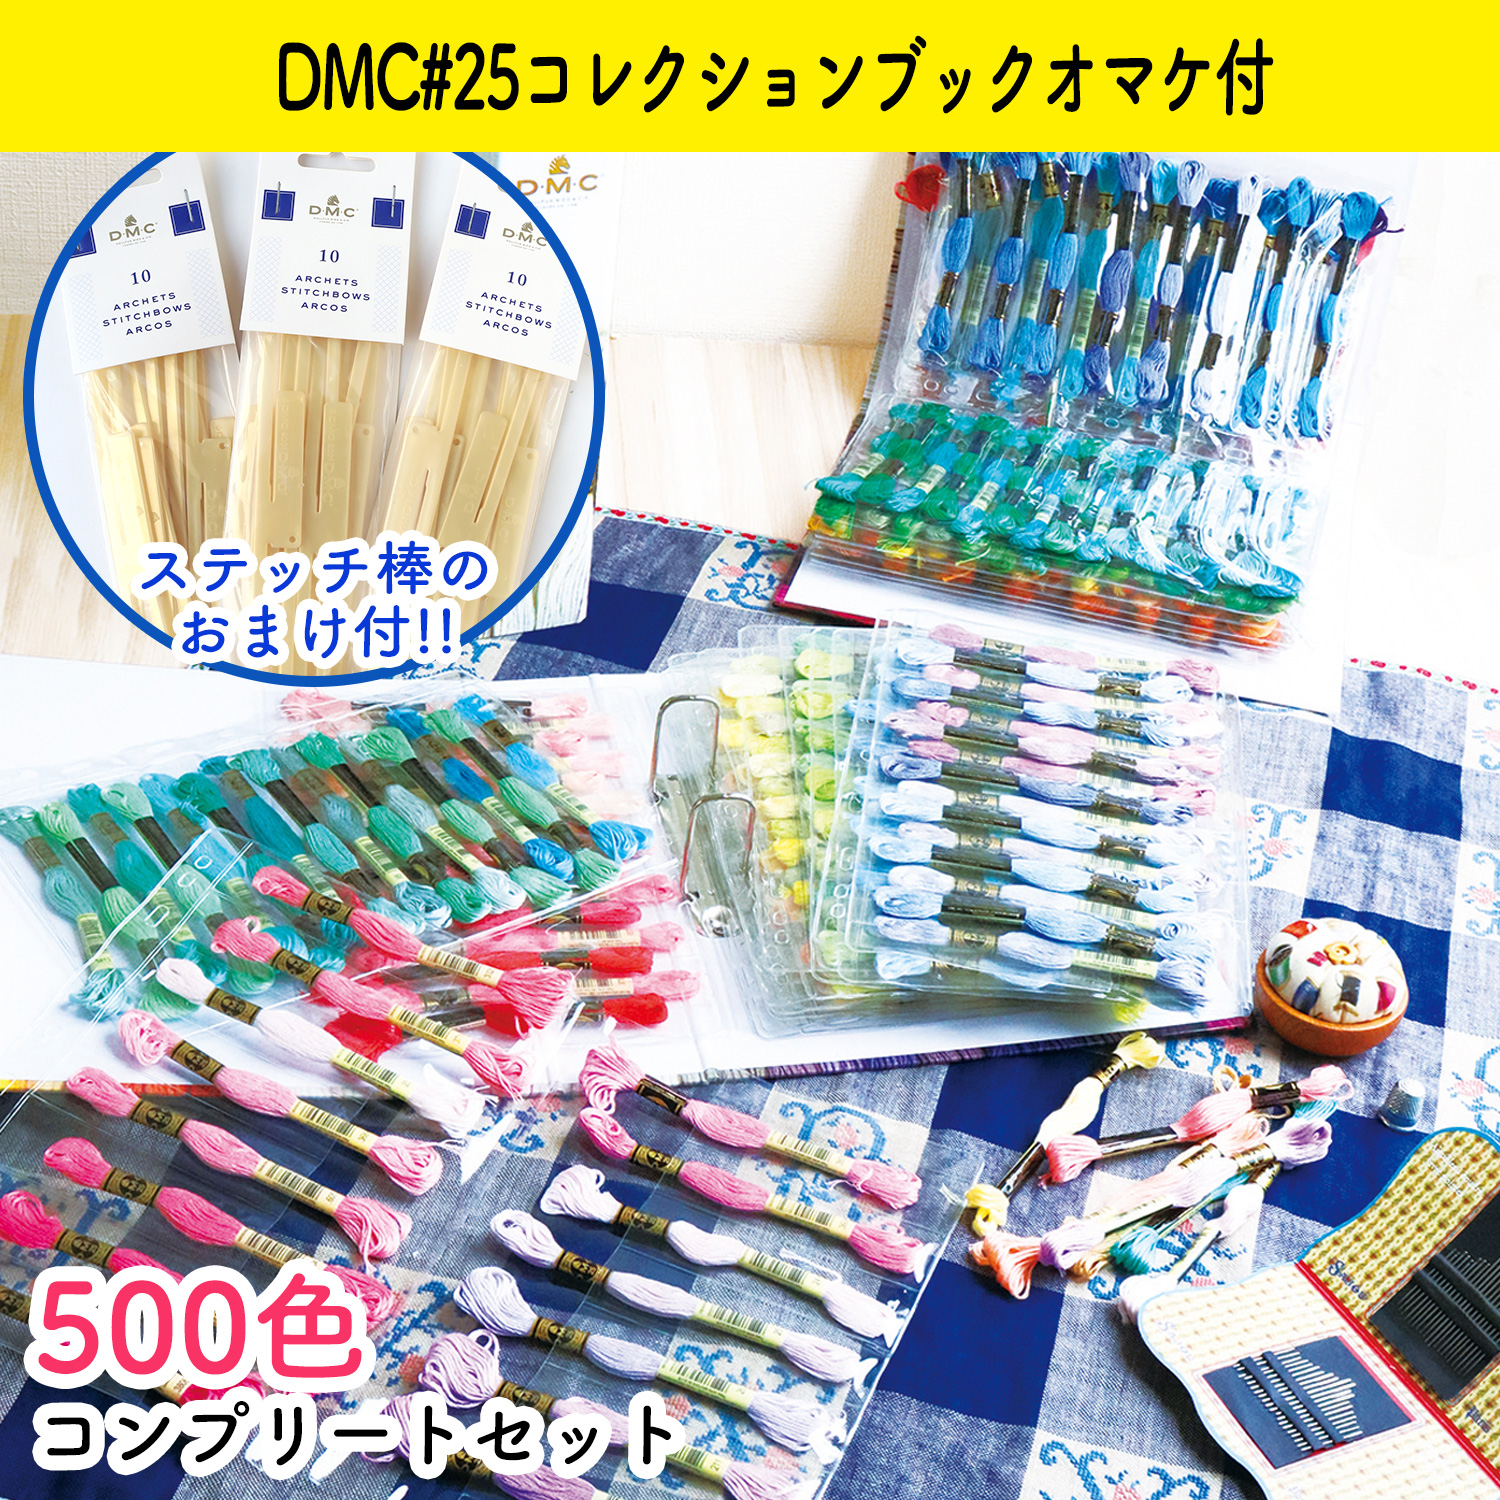 【数量限定特価】DMC-GC003SET-500 DMC25番糸スペシャル3種 全色セット おまけ付き (セット)